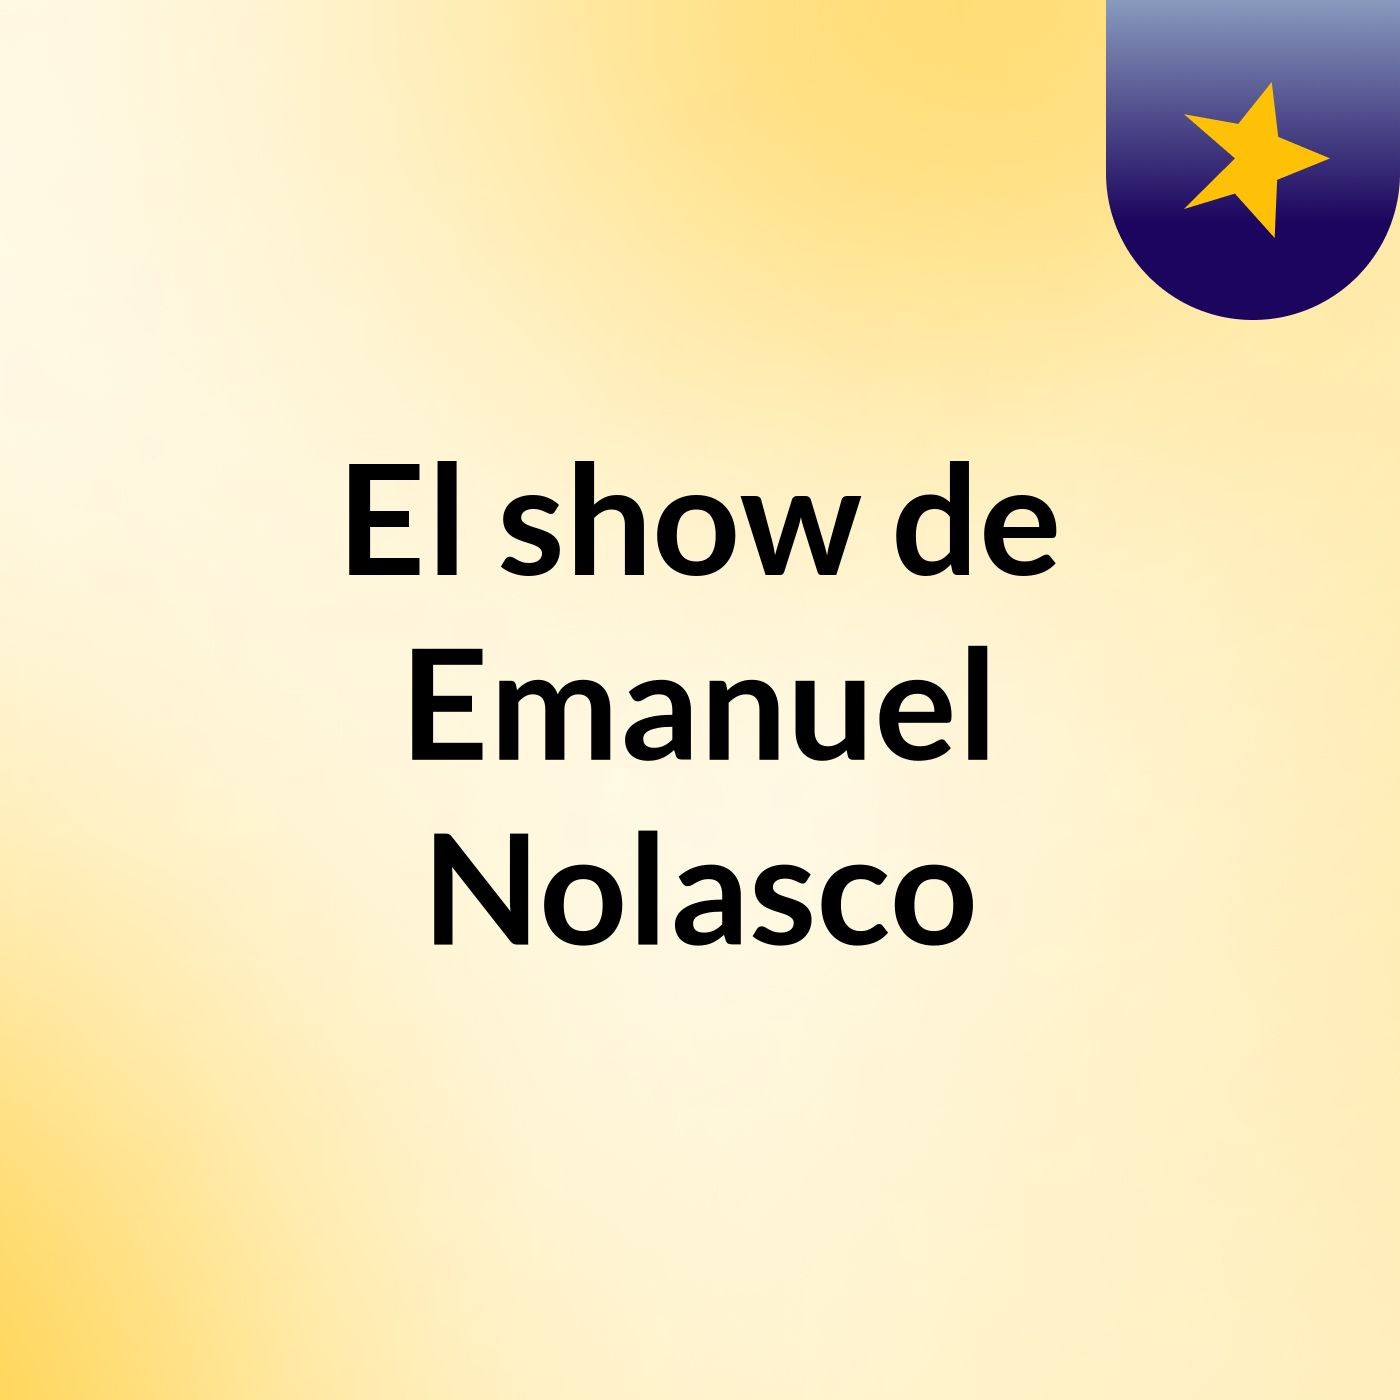 El show de Emanuel Nolasco